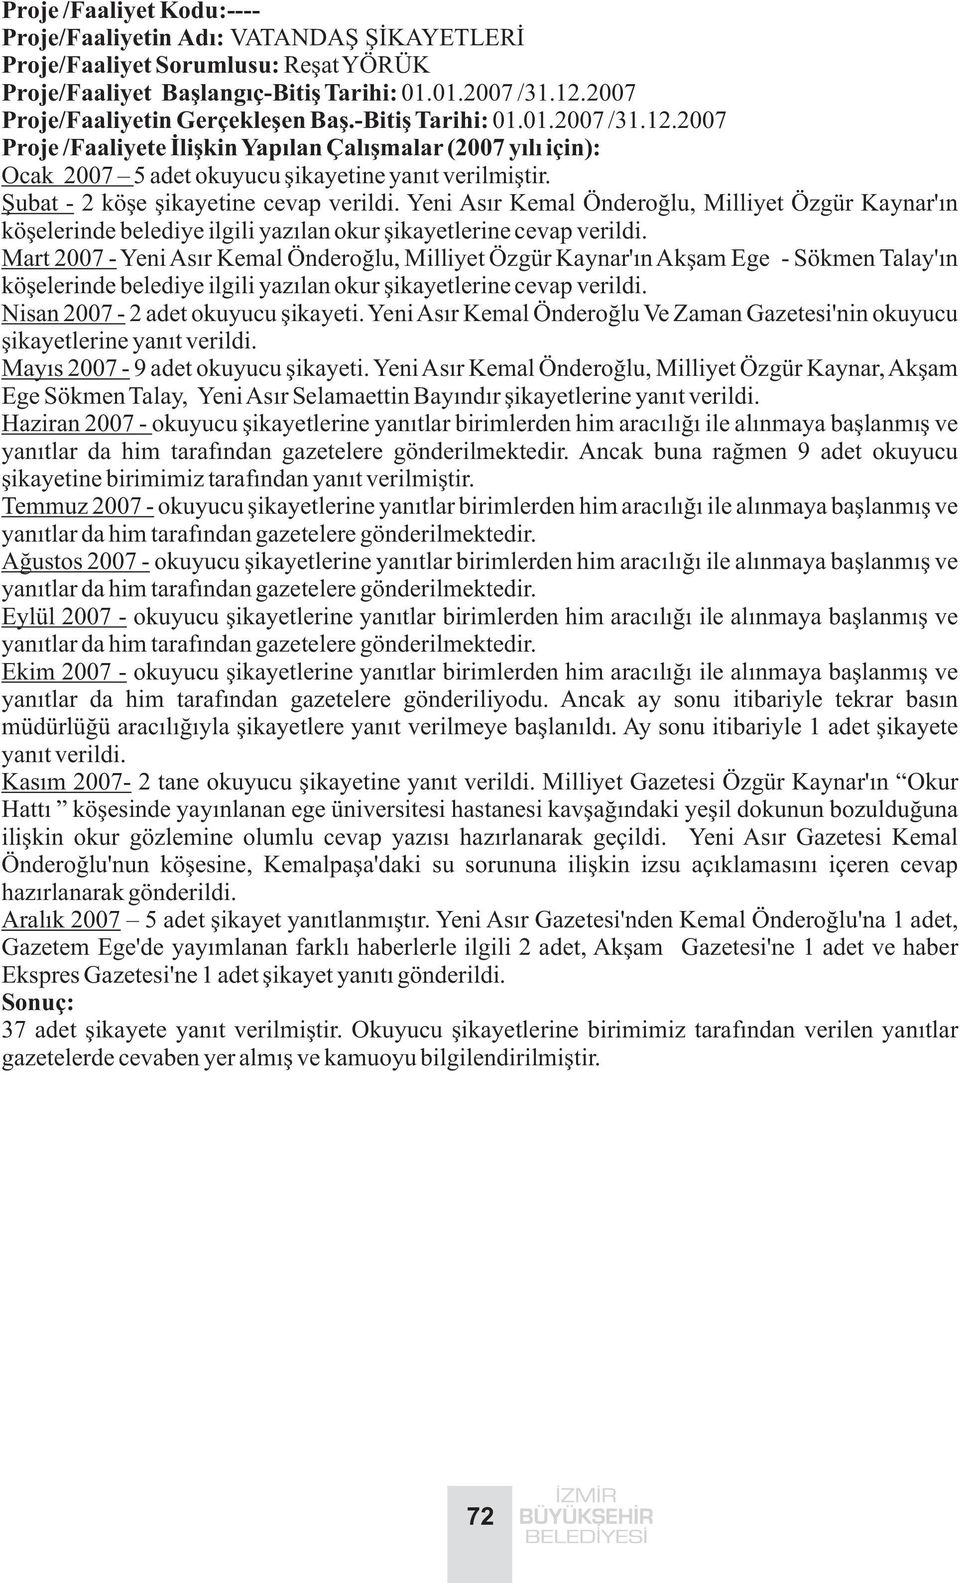 Mart 2007 - Yeni Asýr Kemal Önderoðlu, Milliyet Özgür Kaynar'ýn Akþam Ege - Sökmen Talay'ýn köþelerinde belediye ilgili yazýlan okur þikayetlerine cevap verildi. Nisan 2007-2 adet okuyucu þikayeti.